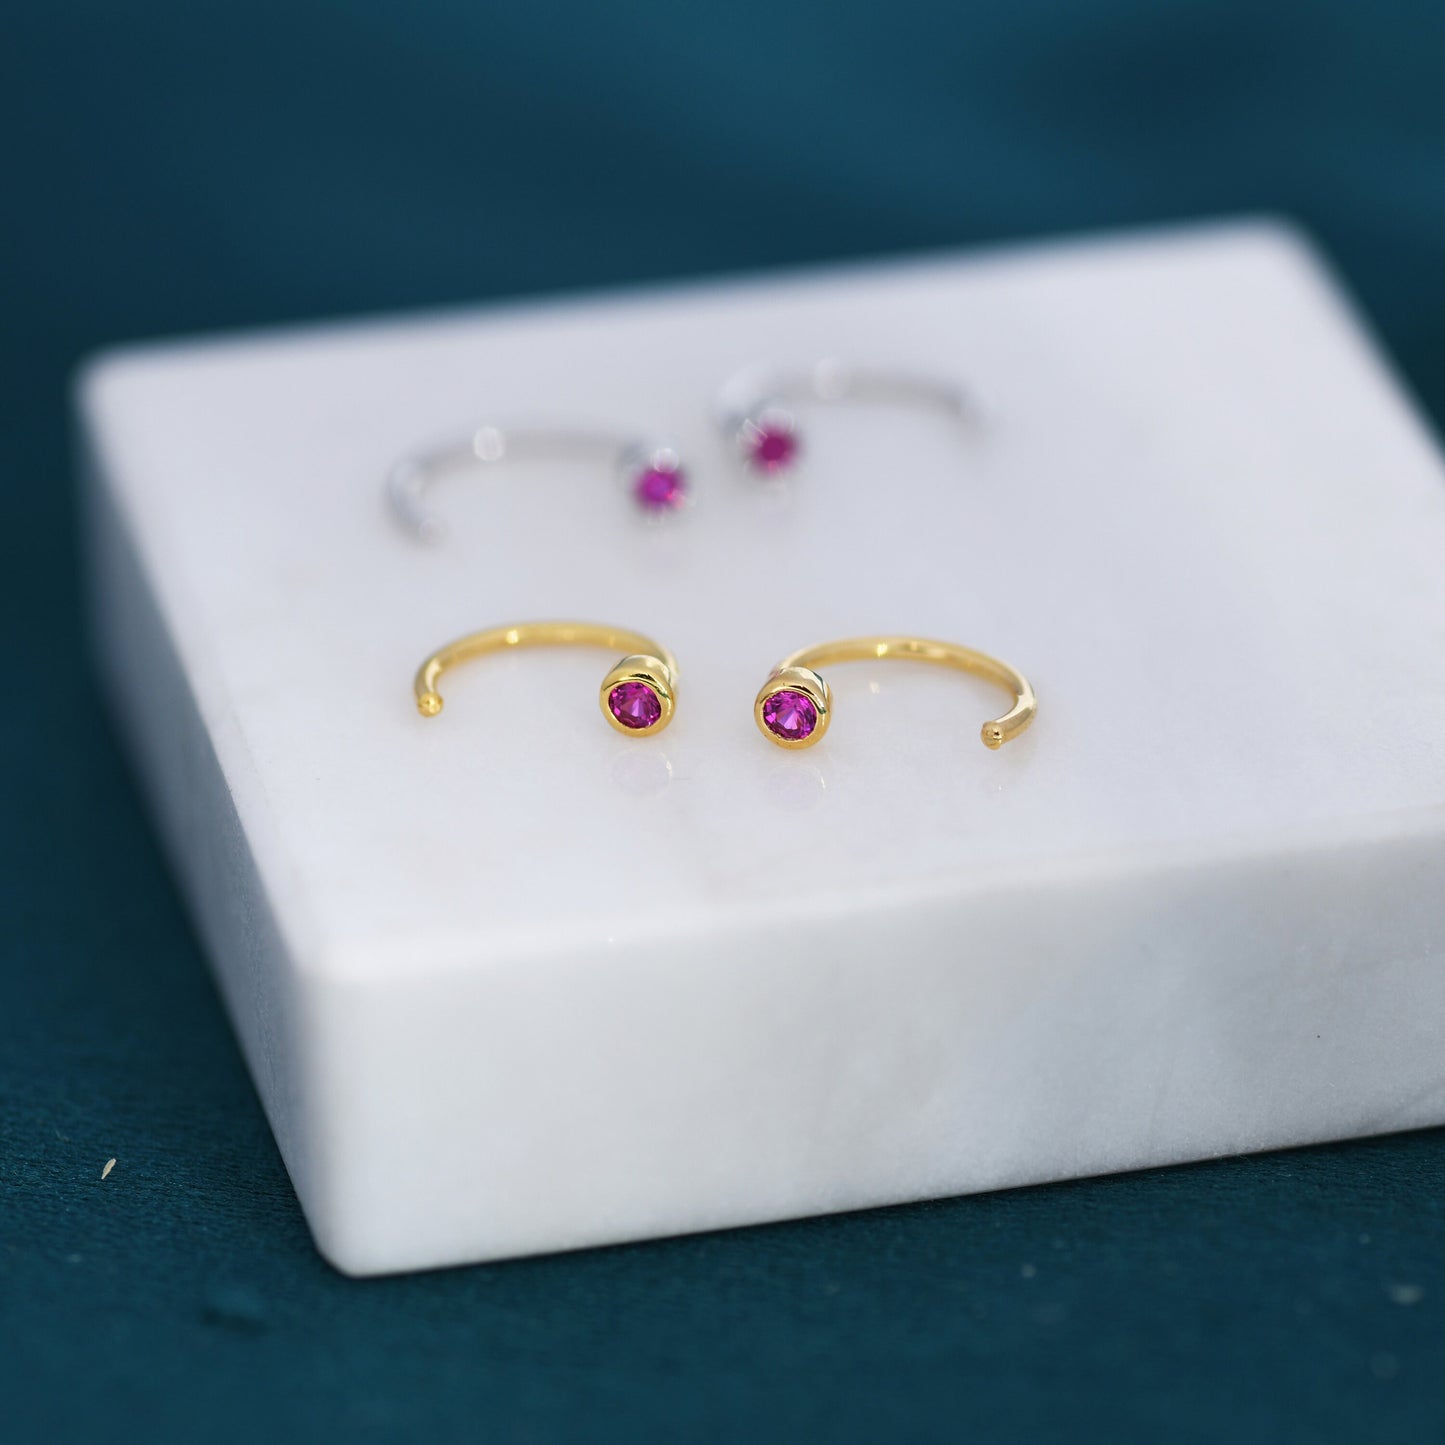 2mm Ruby Pink CZ Huggie Hoop Earrings in Sterling Silver, Silver, or Gold, Half Hoop, Open Hoop, Pull Through,  July Birthstone